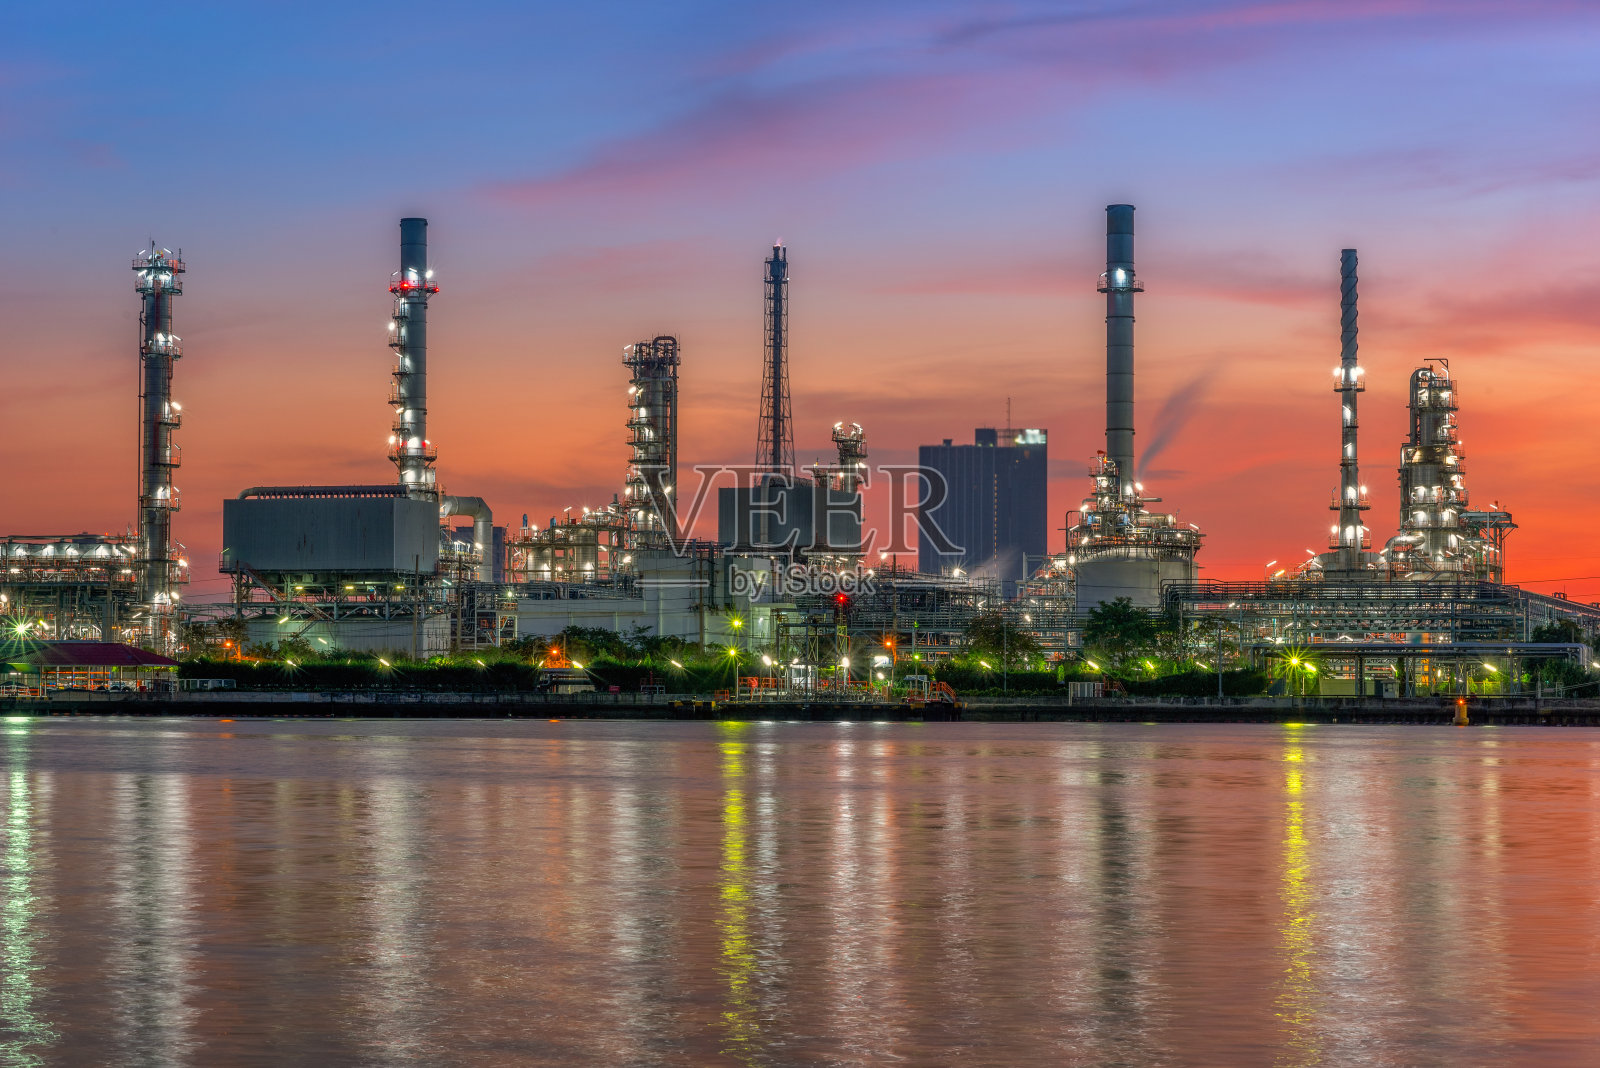 炼油工业工厂沿黄昏晨光照片摄影图片